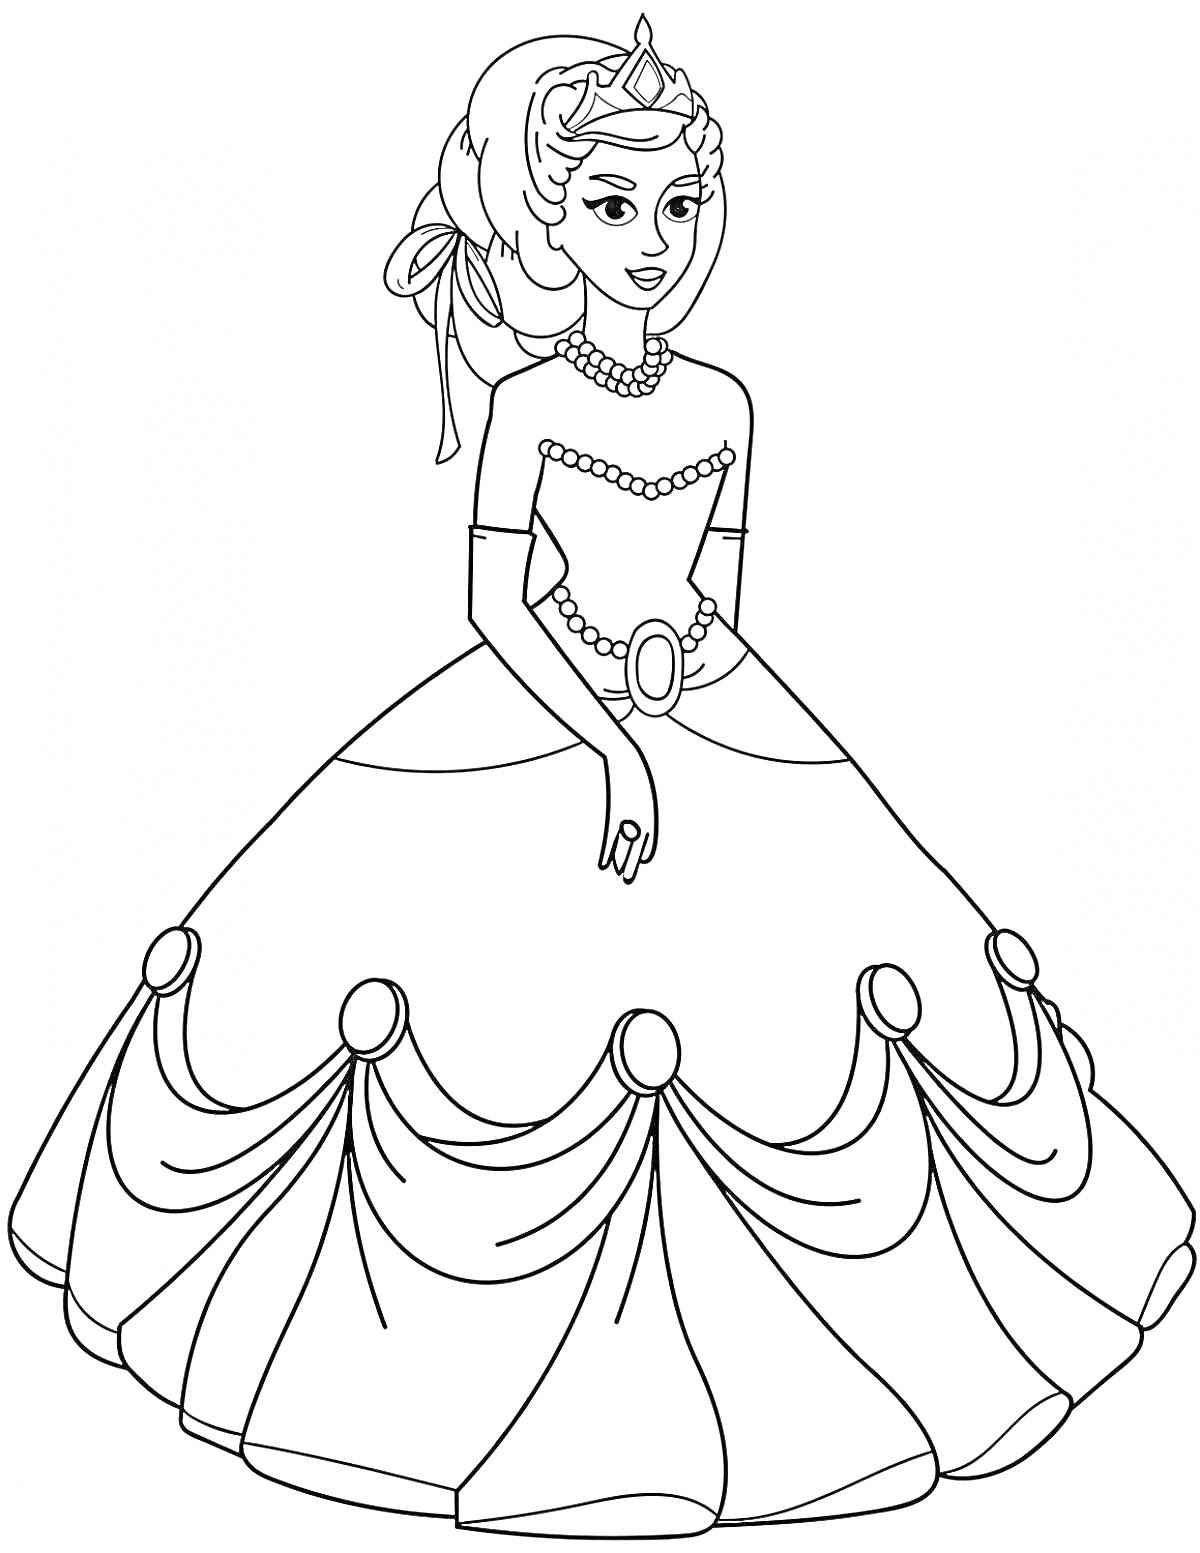 Принцесса в длинном бальном платье с украшениями и короной